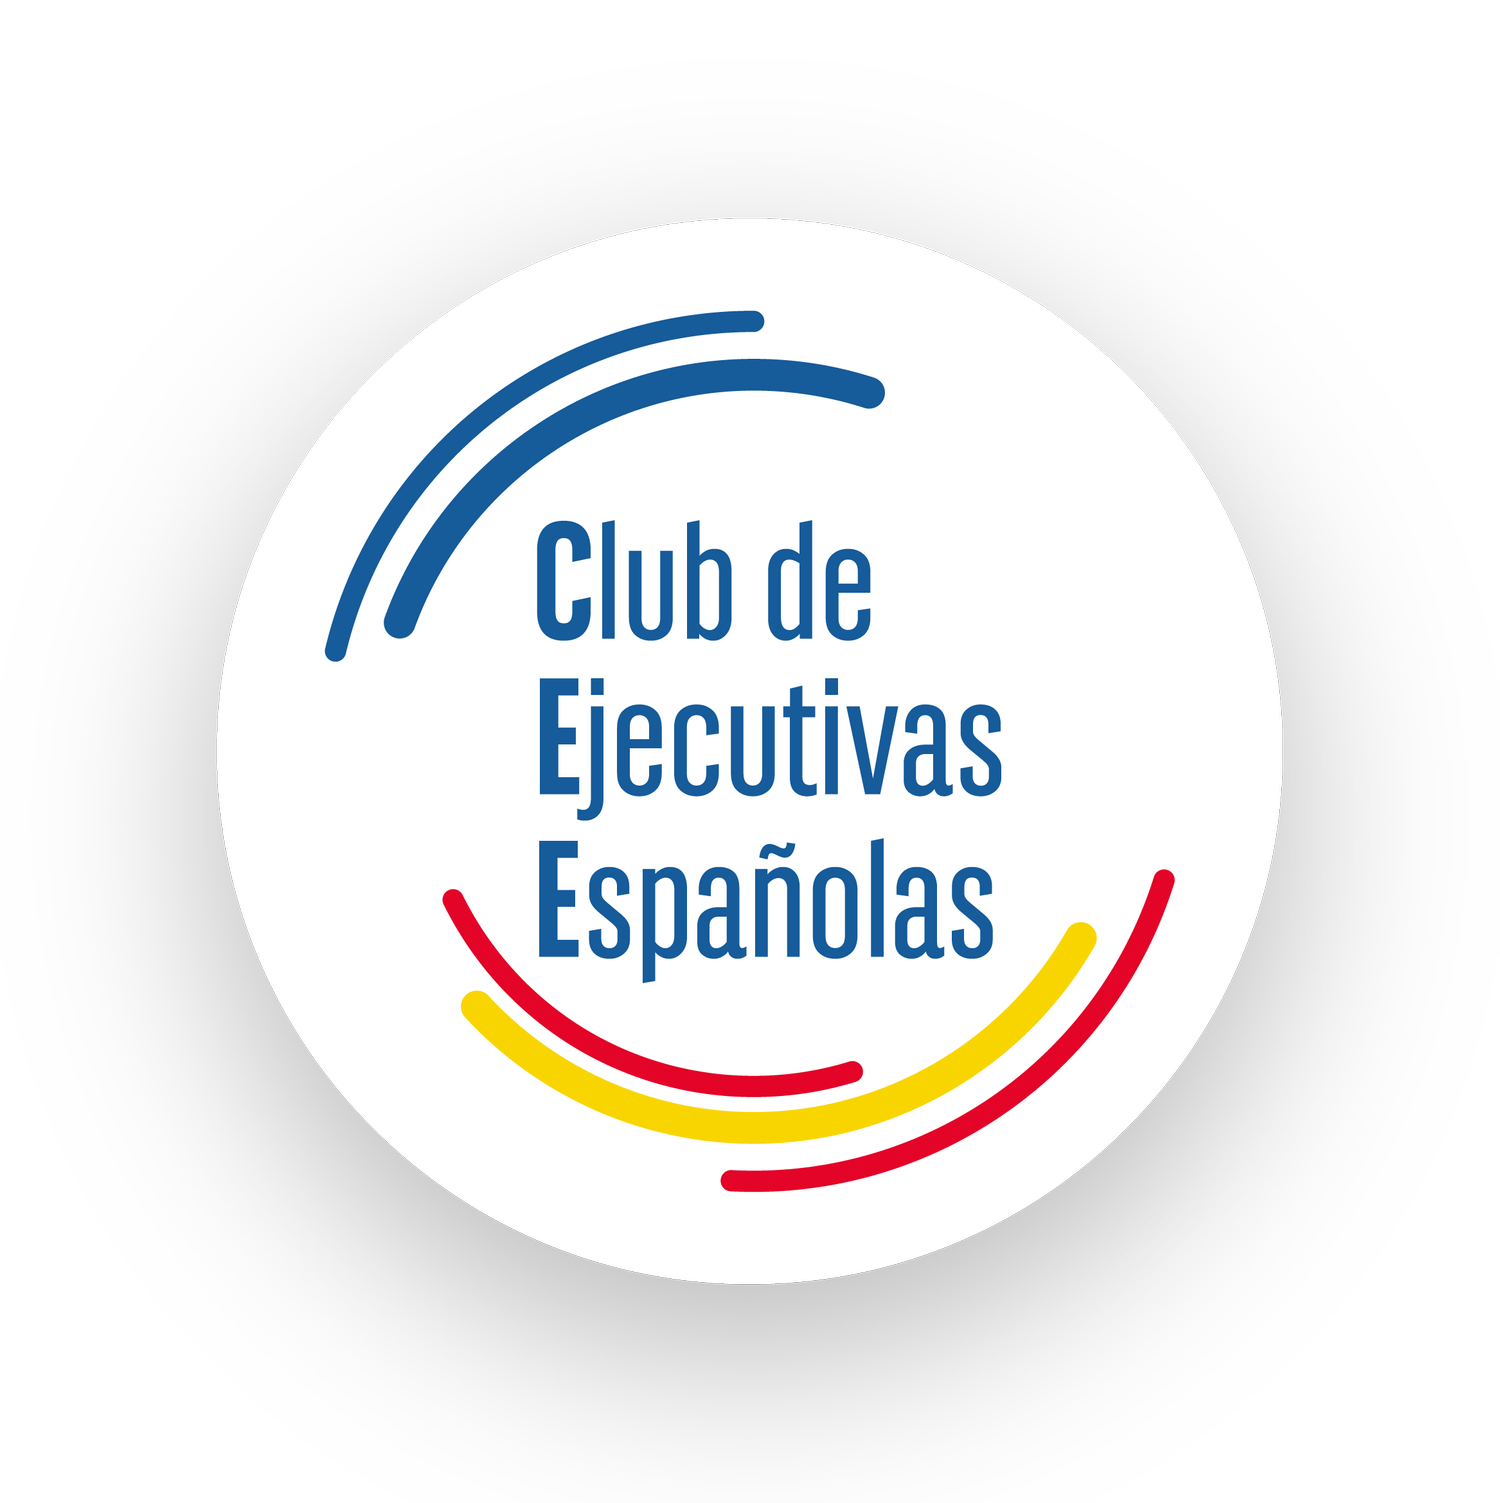 Club de Ejecutivas Españolas